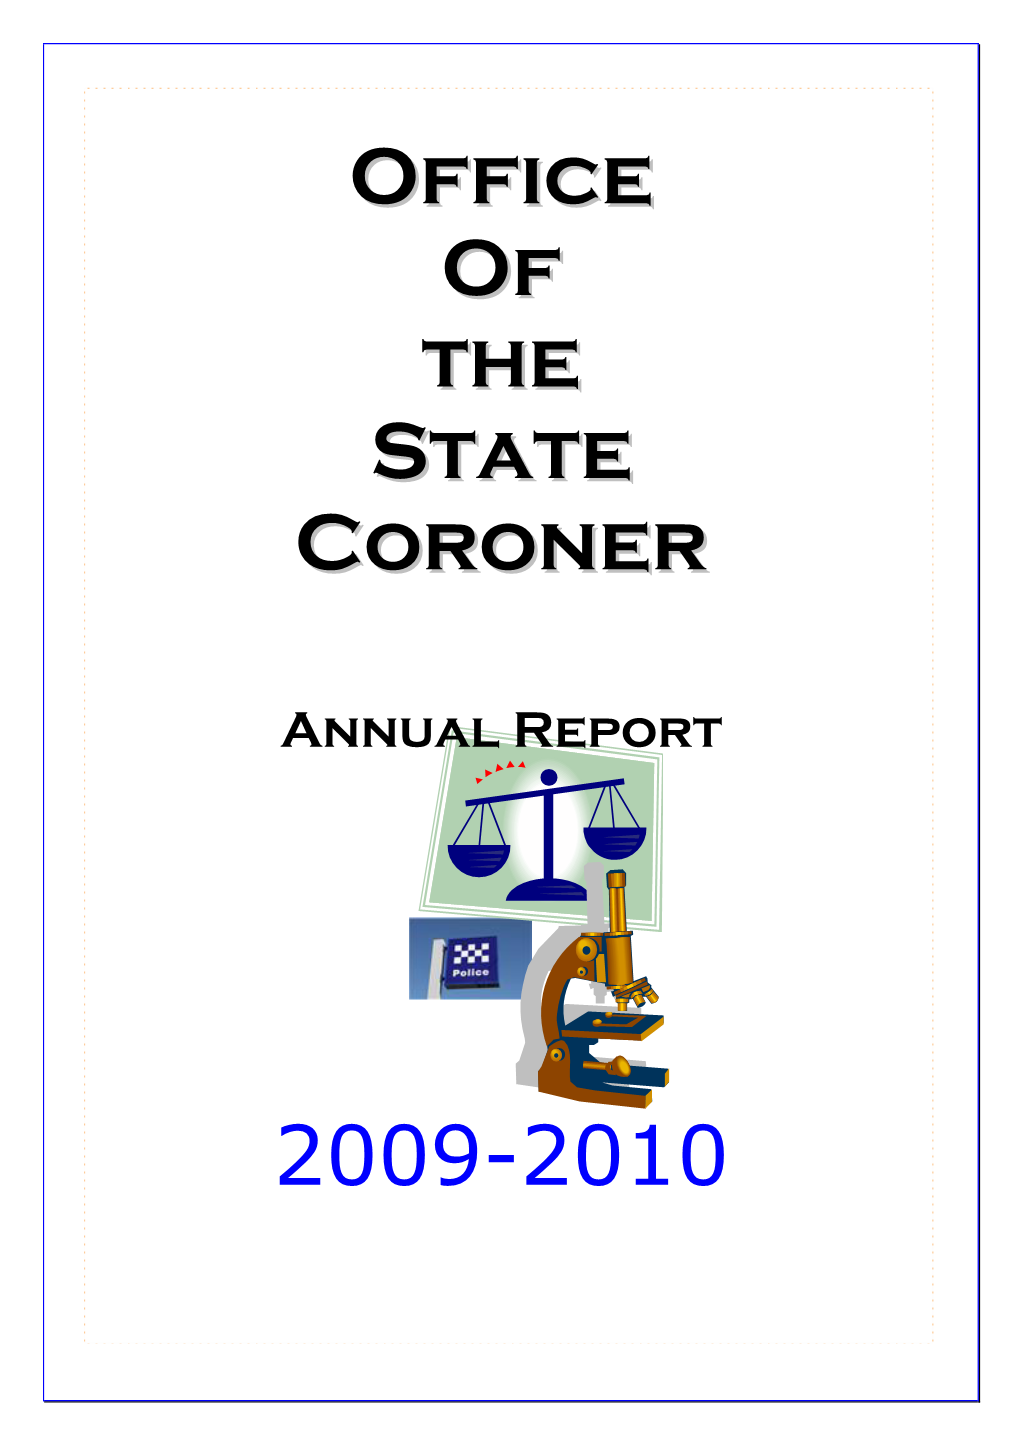 Annual Report 2009/10 (PDF)